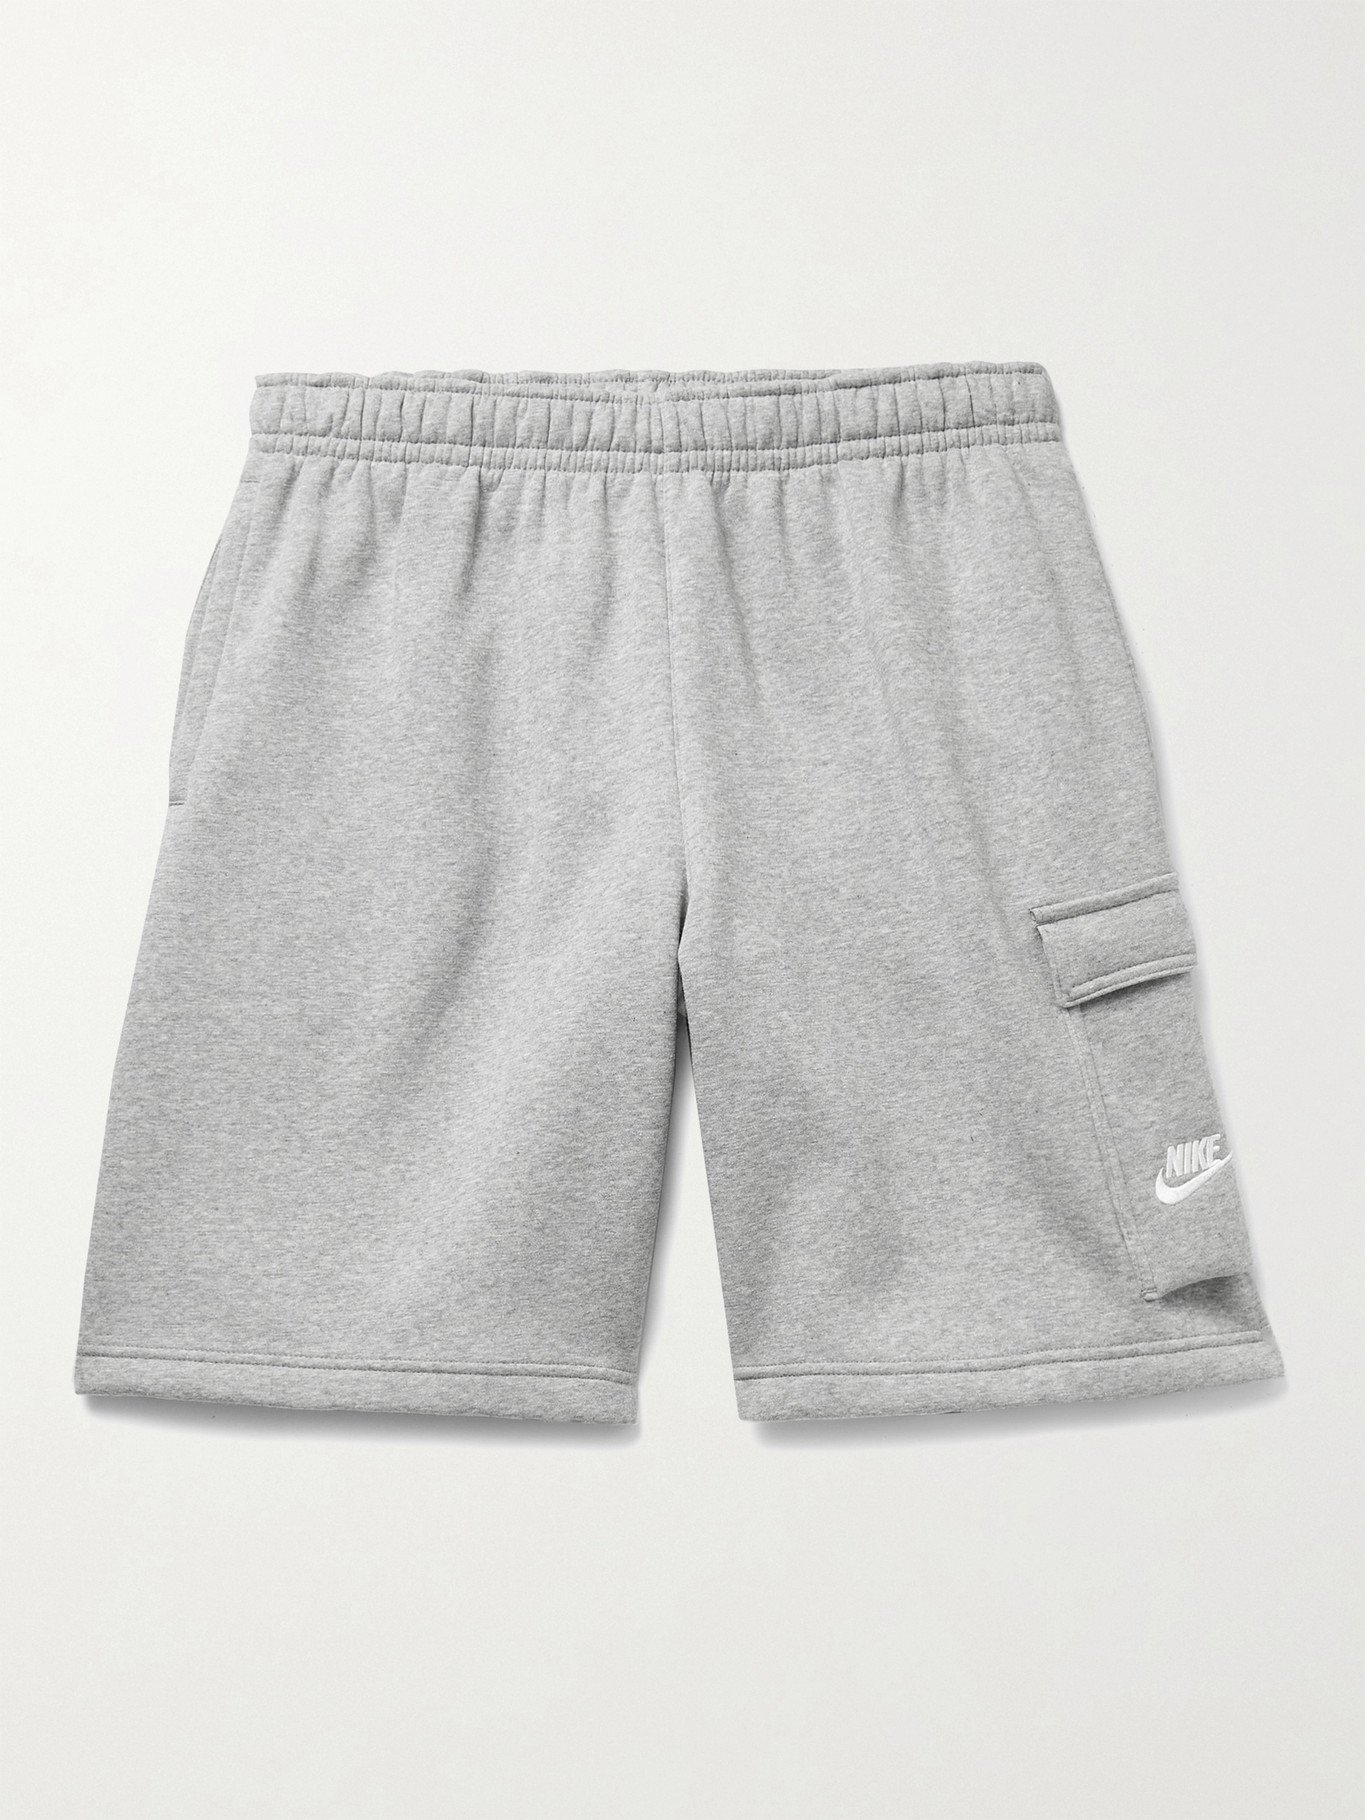 nike cargo shorts grey